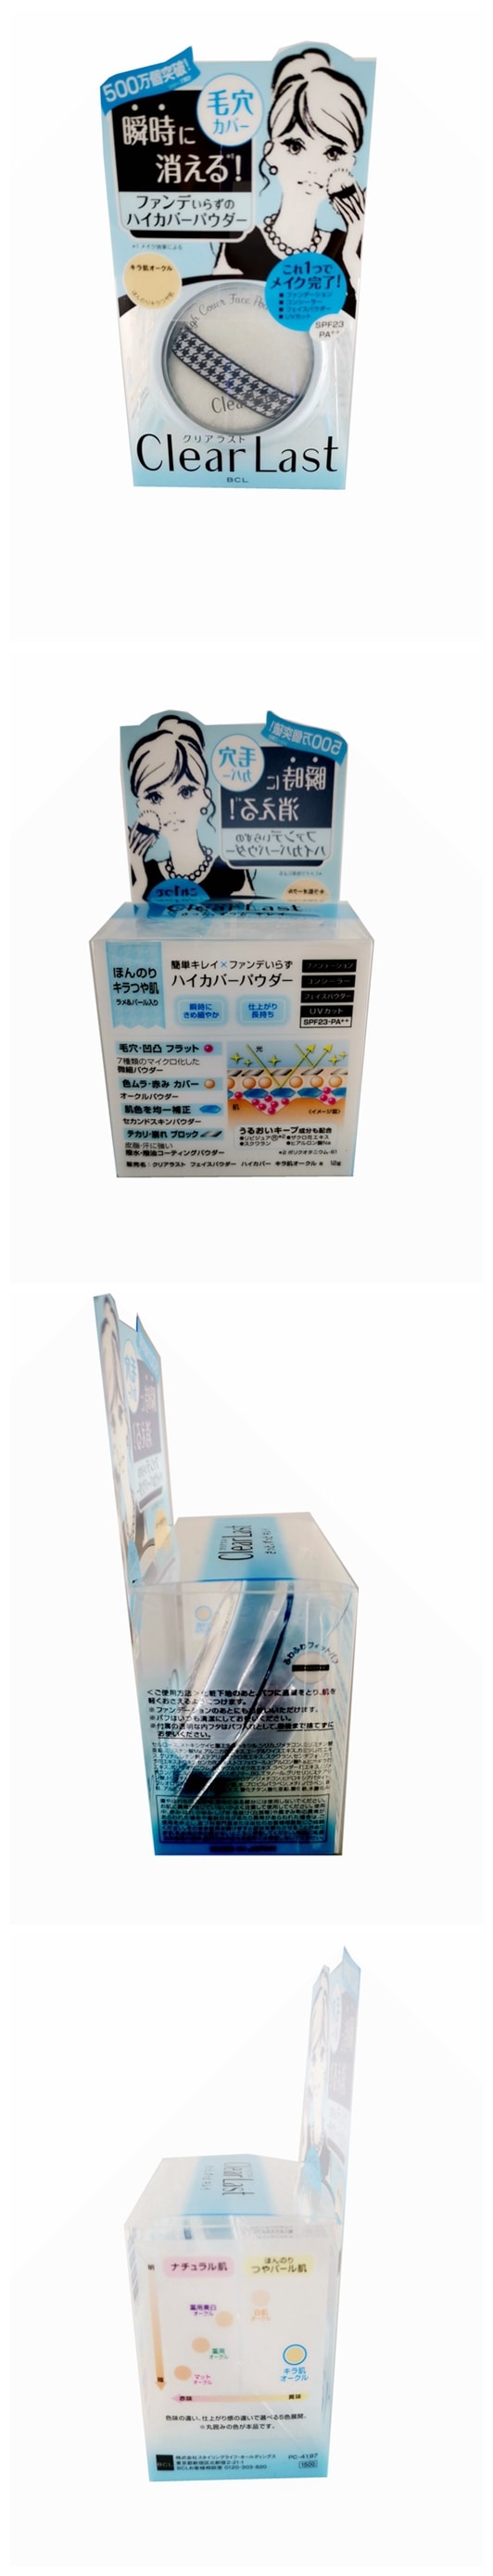 特价大处理【日本直邮】日本原装BCL 保湿防晒遮瑕三效合一粉饼SPF23 PA++ 12g 三款选 蓝色